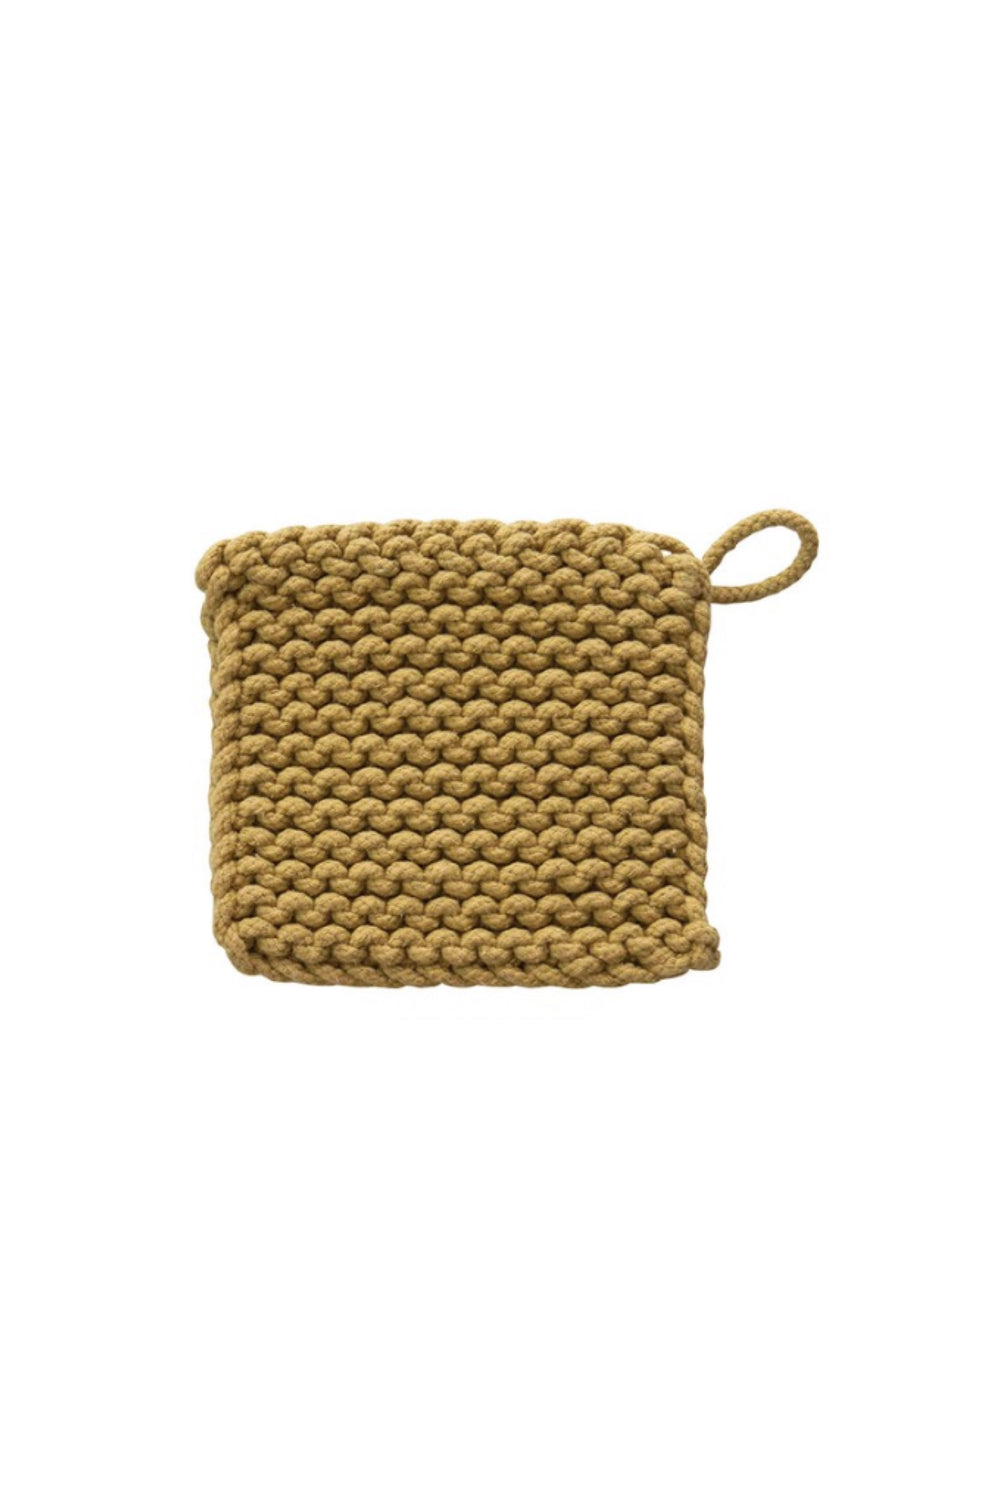 Crochet Pot Holder 001